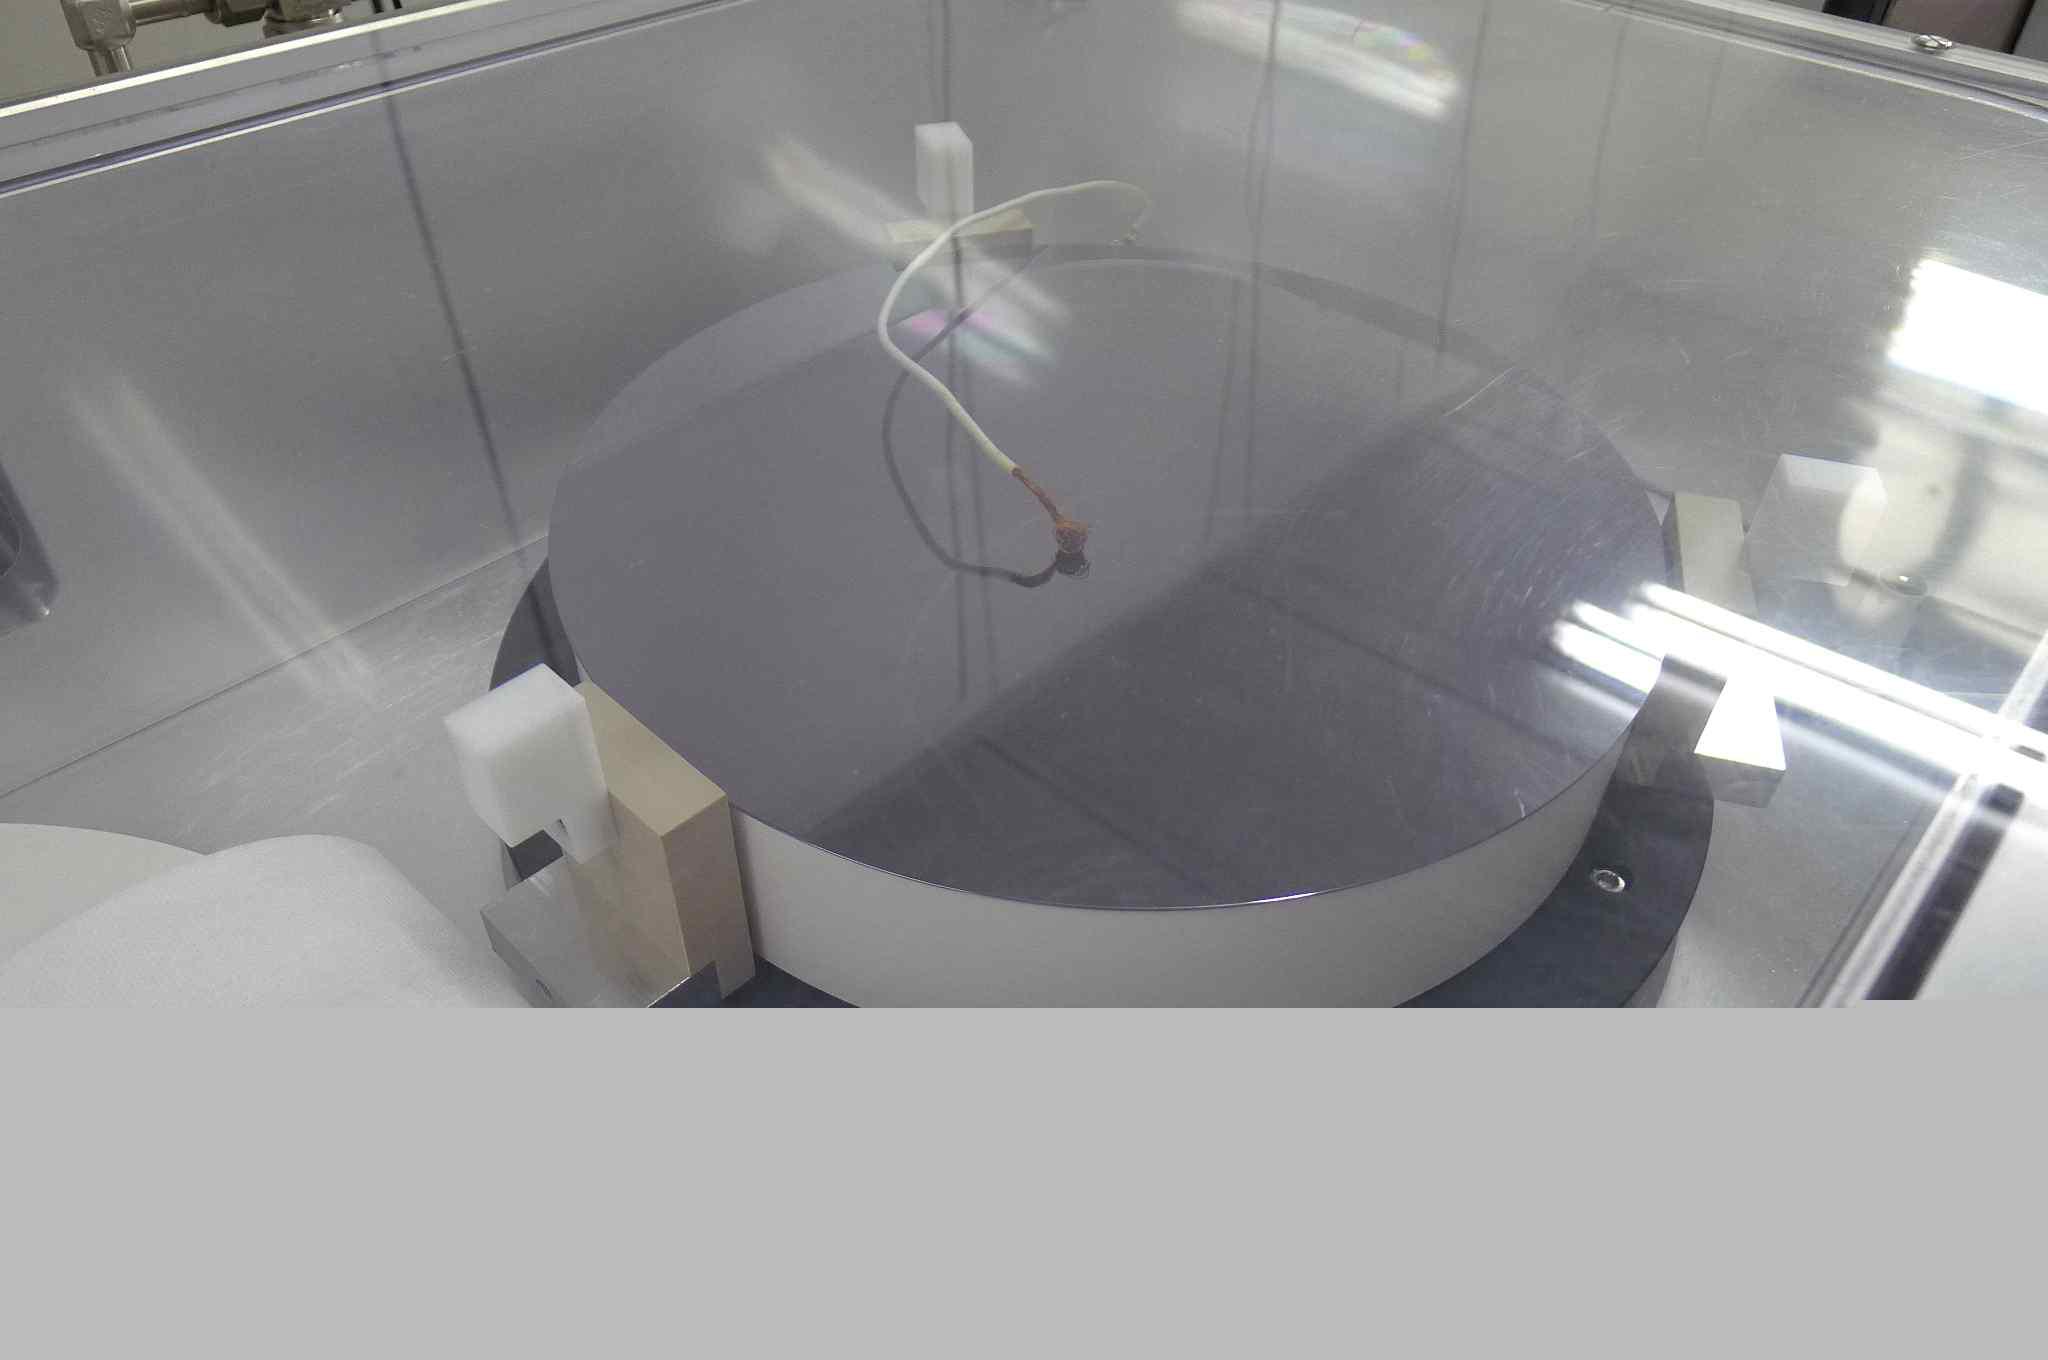 HDP용 ESC의 기초 test를 위한 test chamber 내부 모습